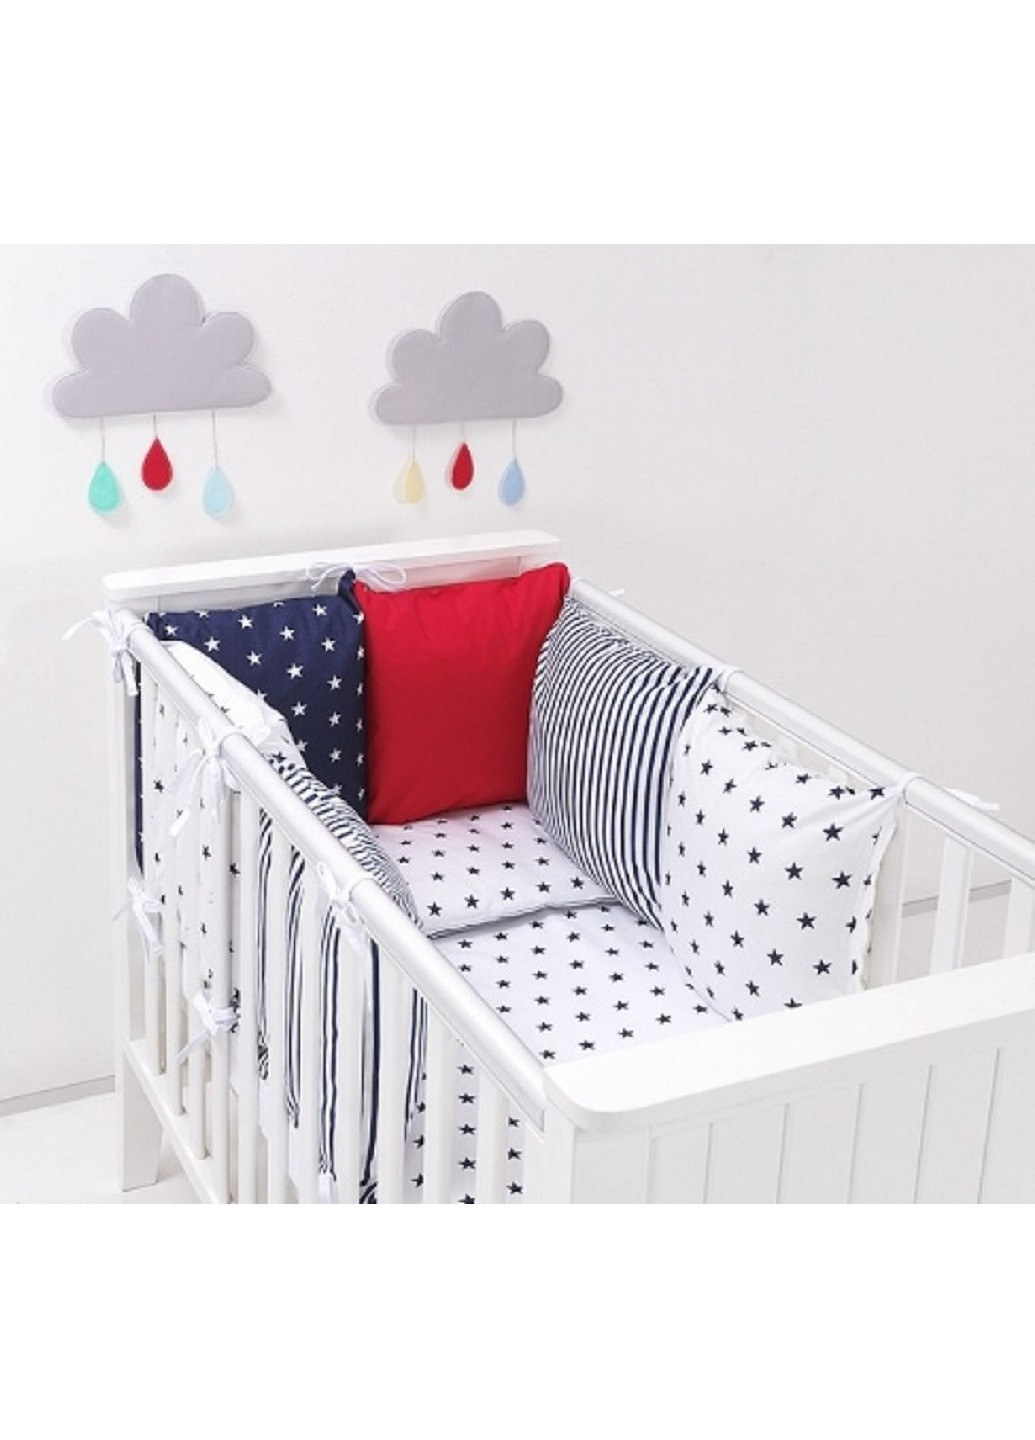 Комплект в детскую кроватку кровать люльку набор бортики защита по всему периметру постельное белье ручной работы (28631-Нов) Unbranded (253264670)